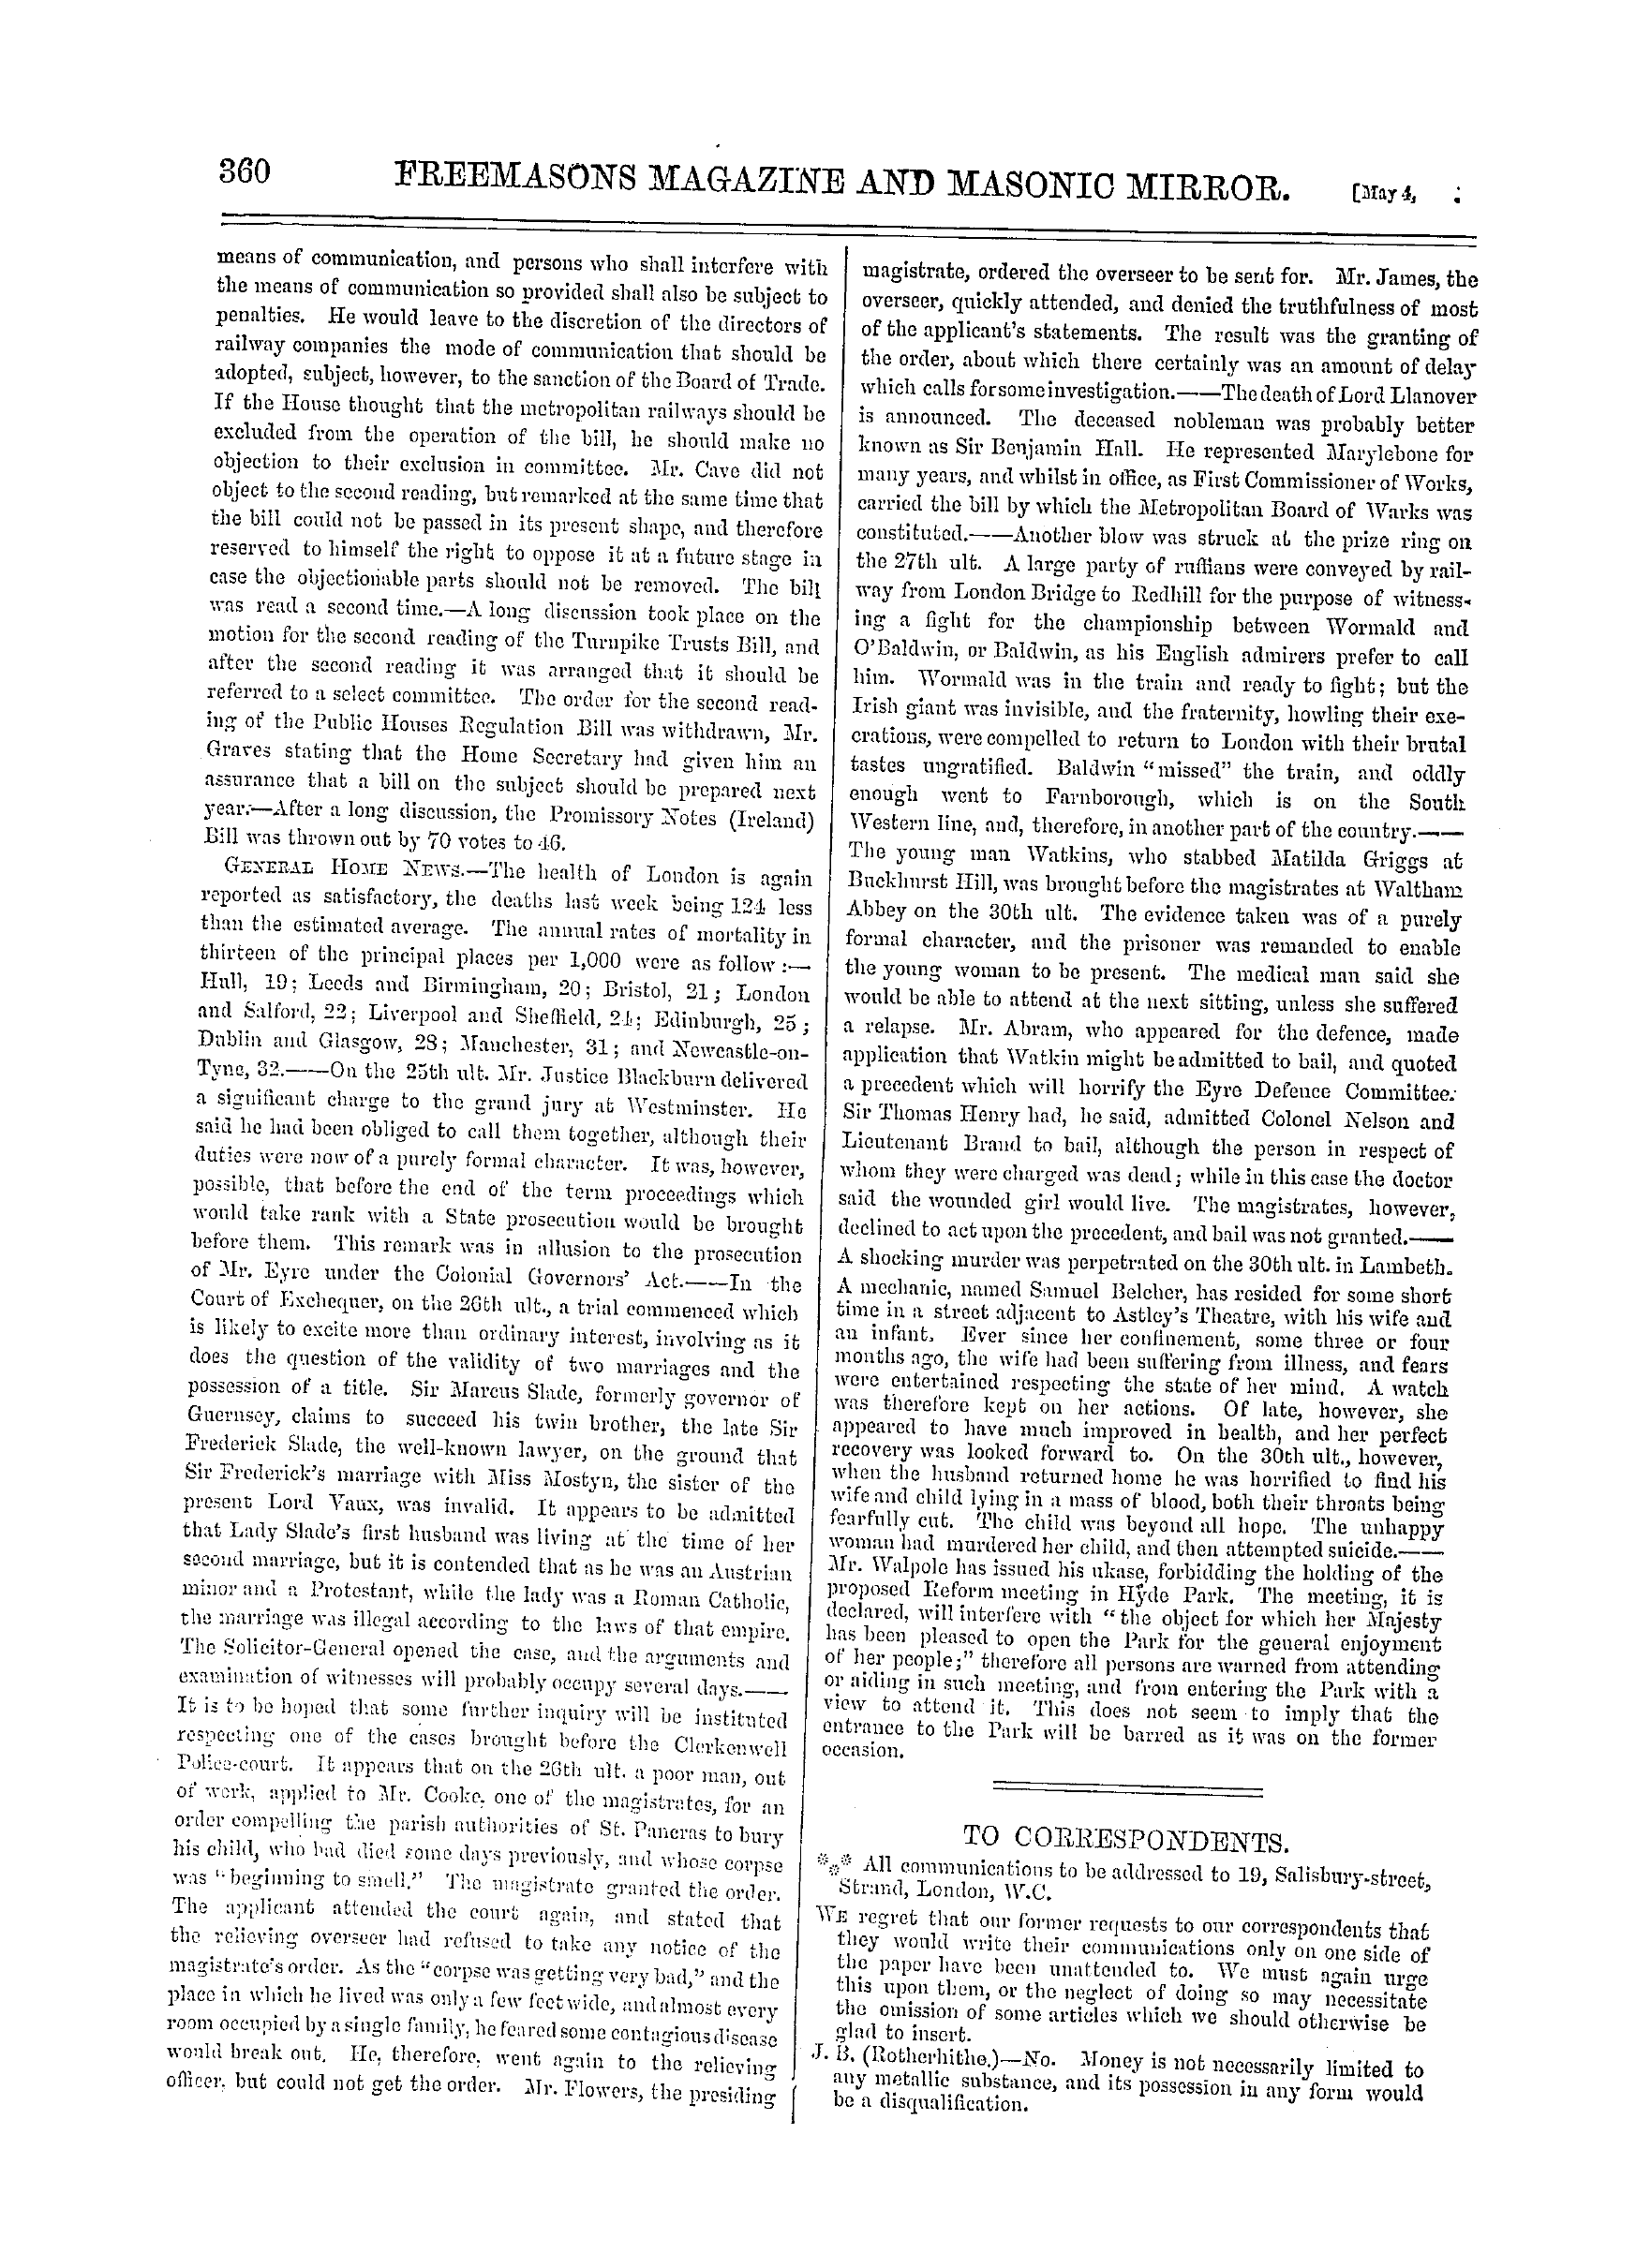 The Freemasons' Monthly Magazine: 1867-05-04: 20